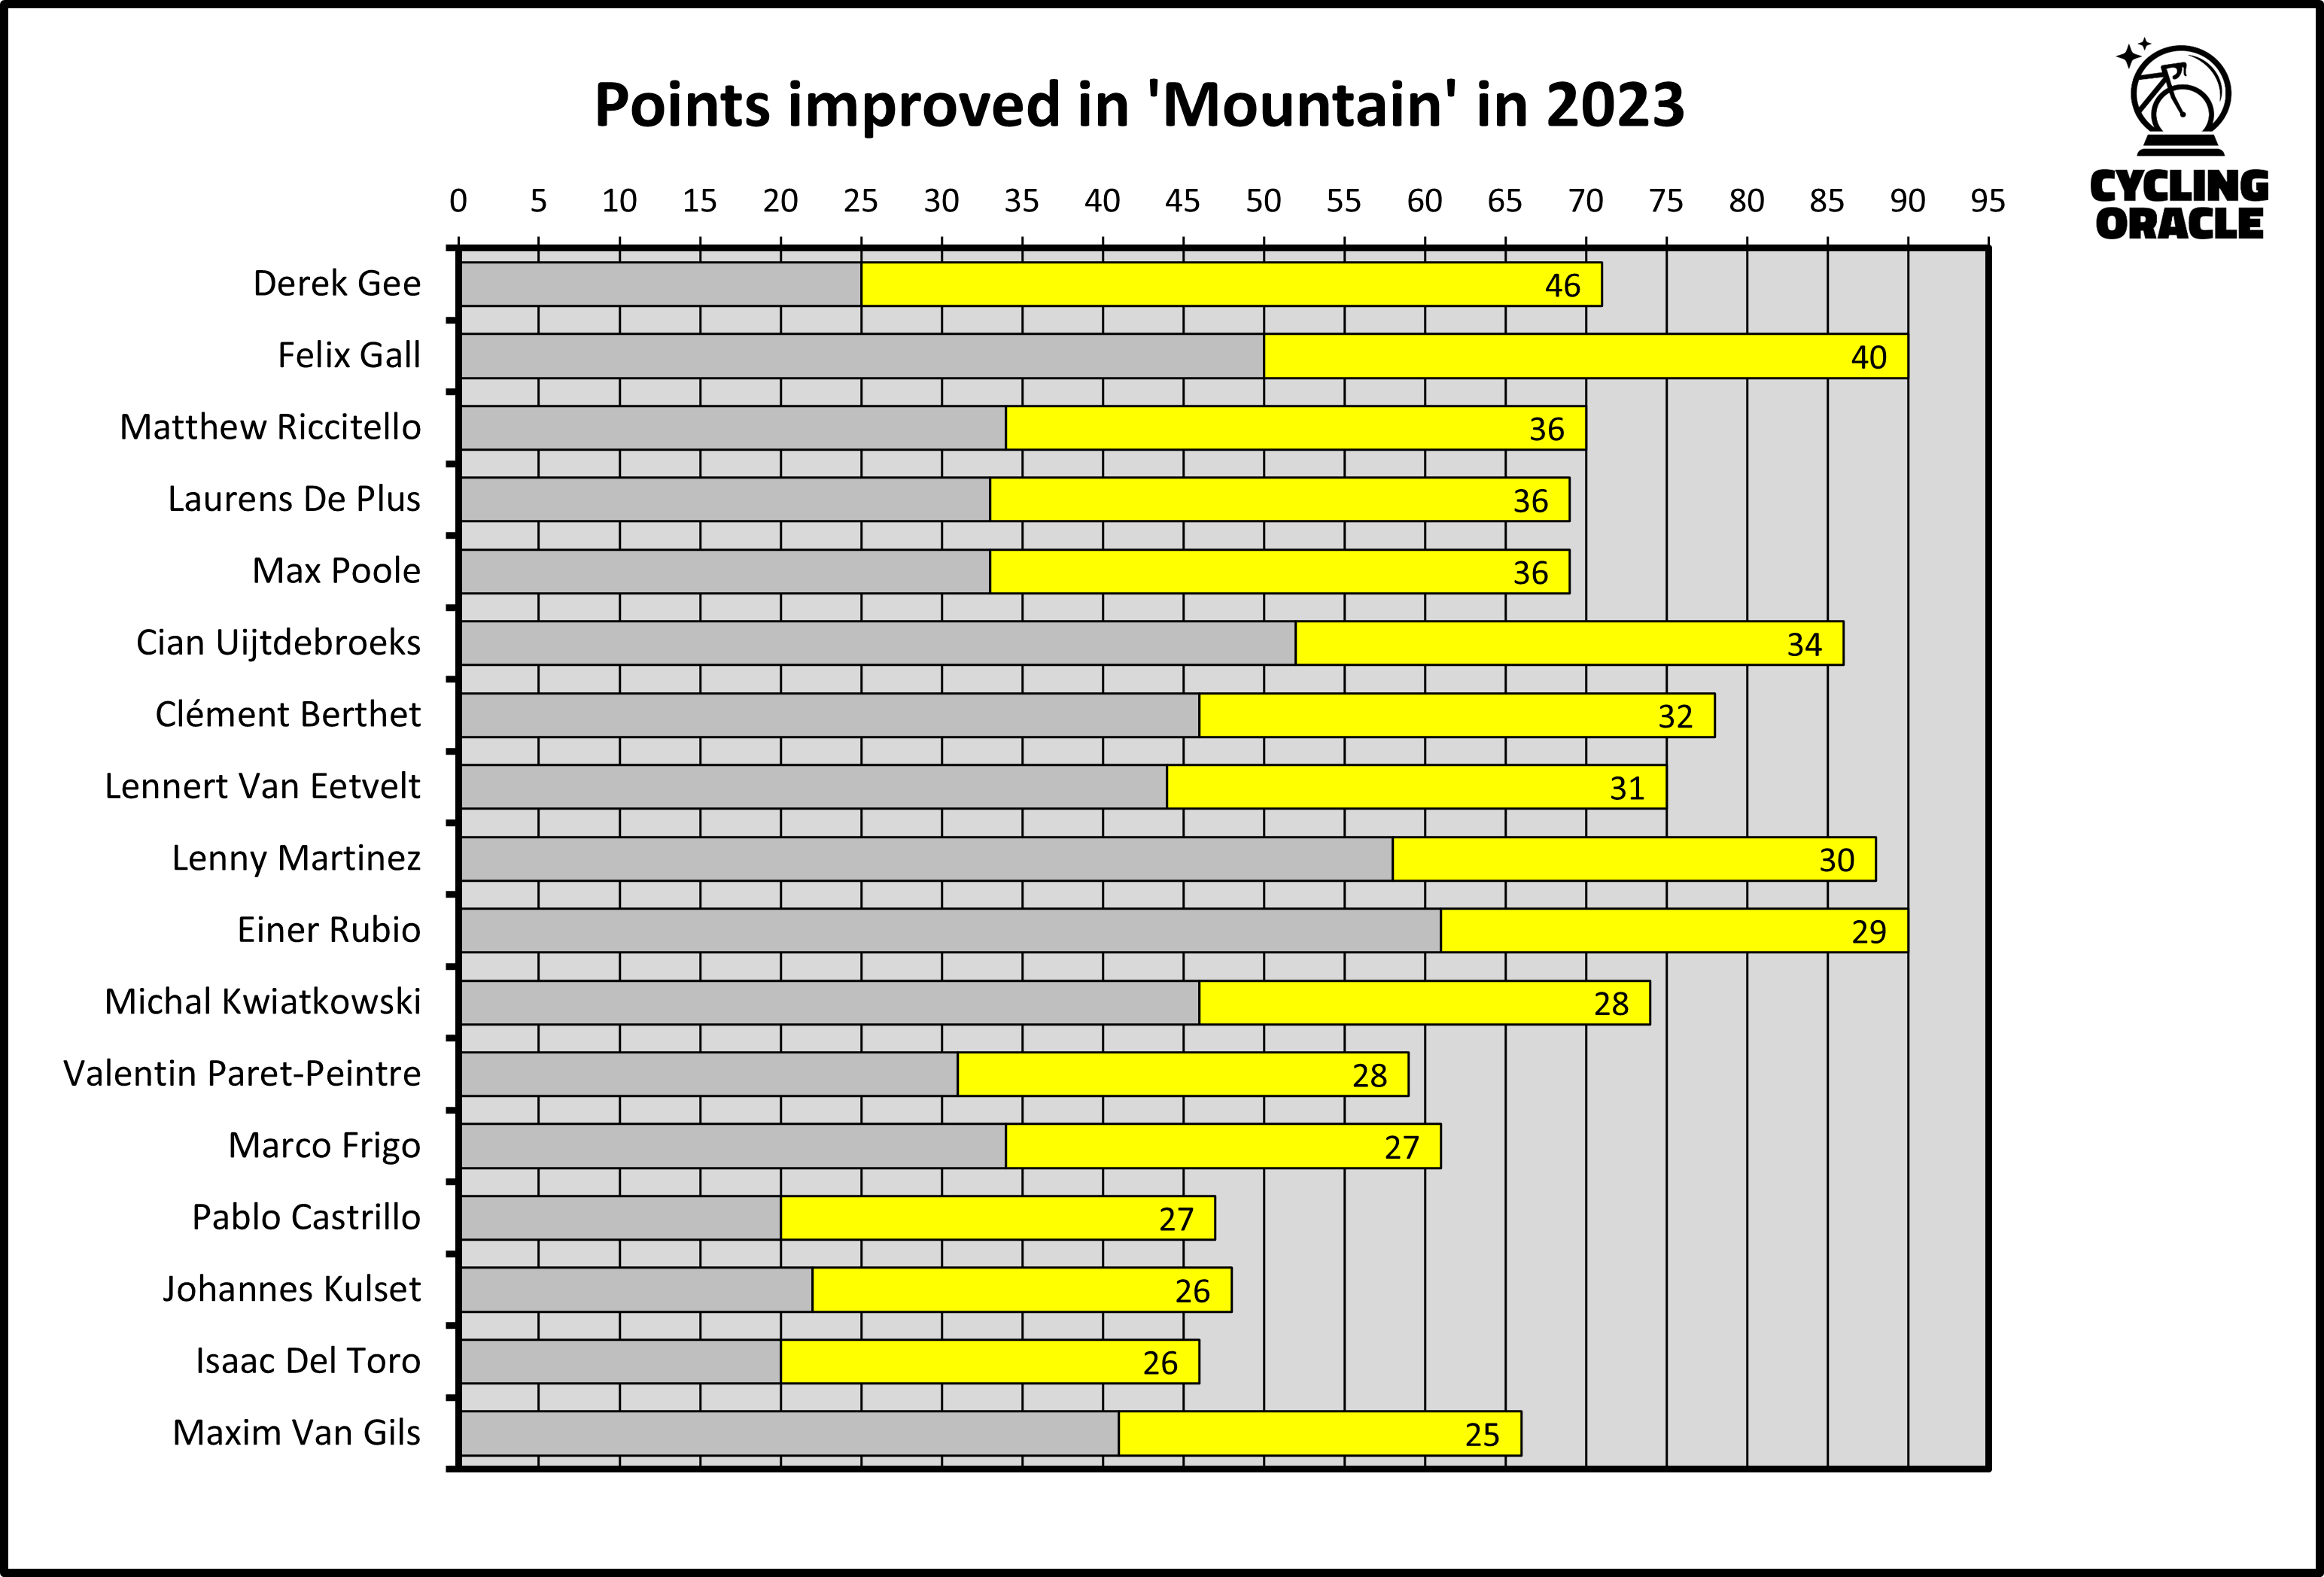 Meest verbeterde klimmers in 2023